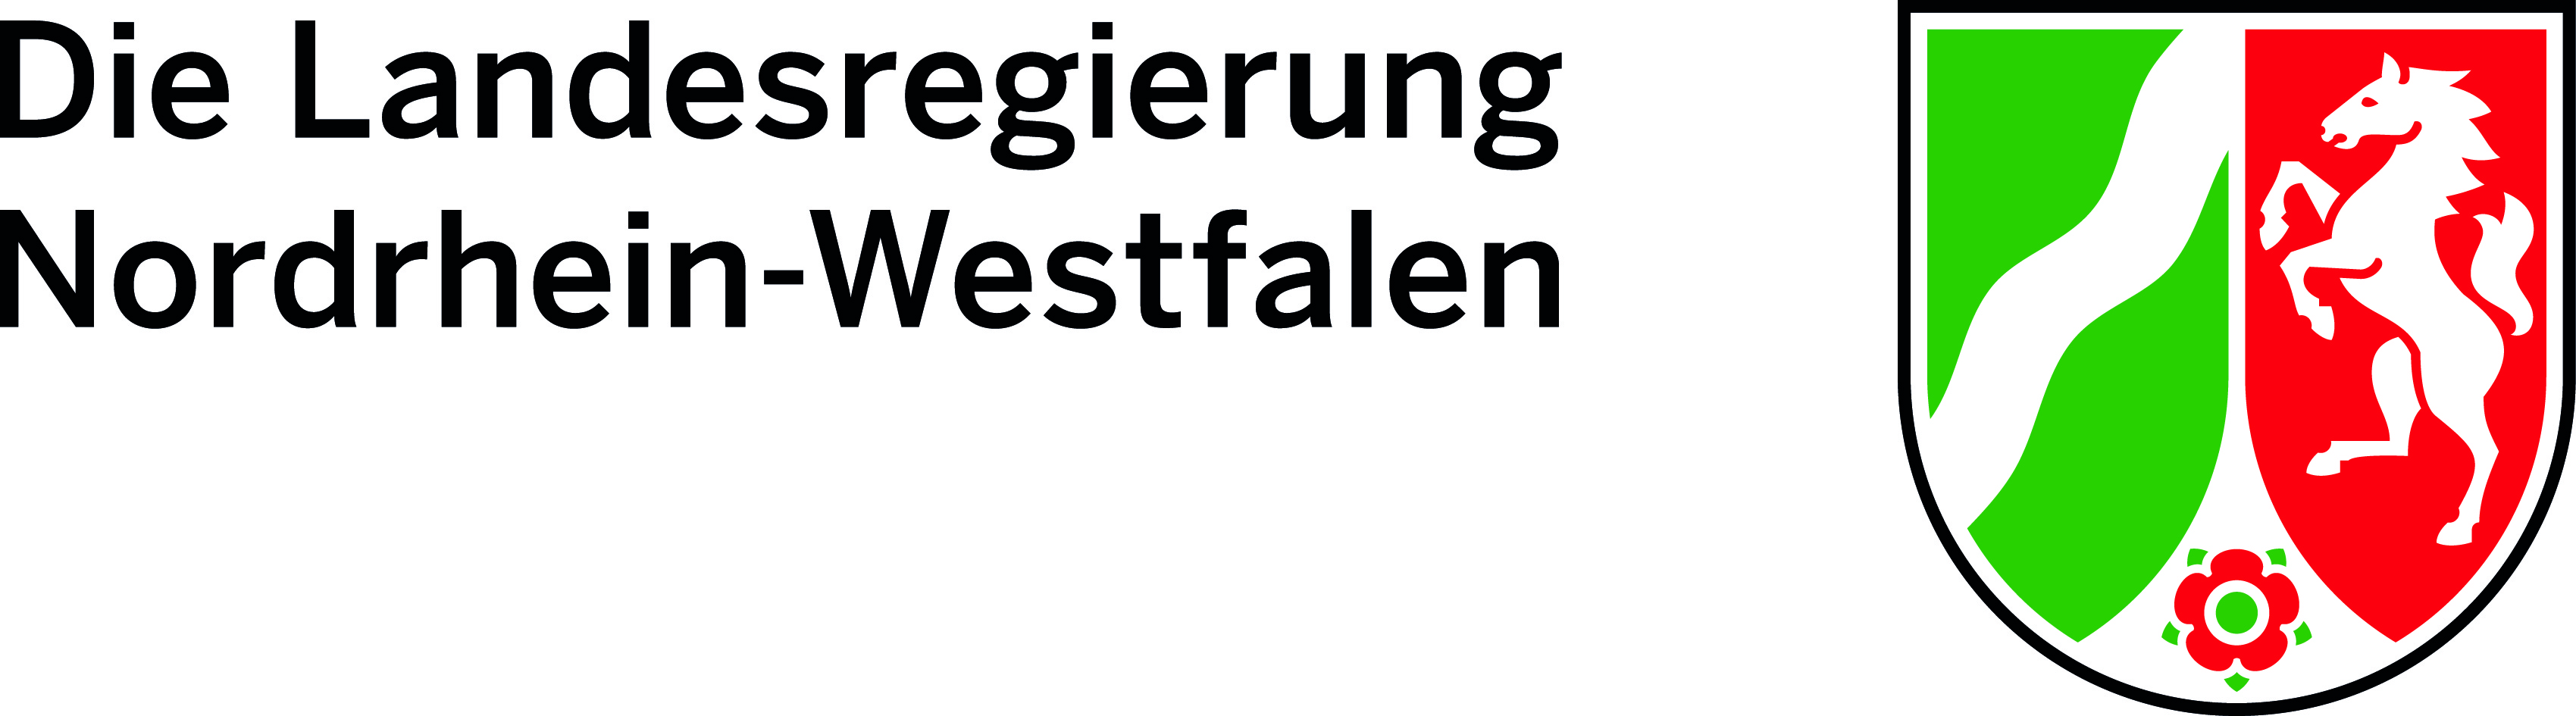 Die Landesregierung von Nordrhein-Westfalen